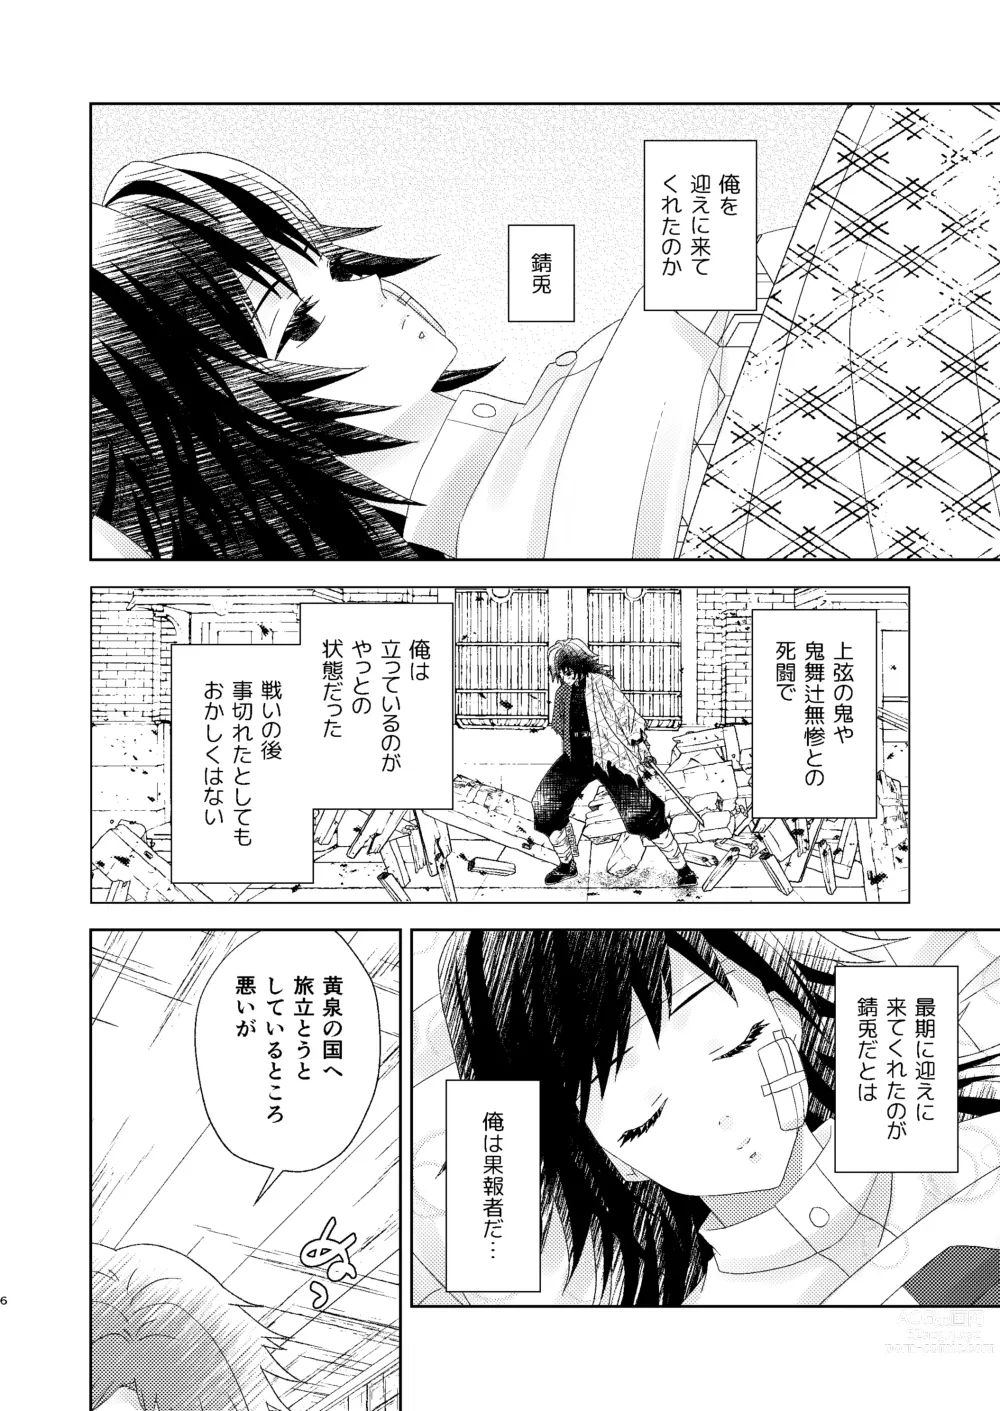 Page 5 of doujinshi Yuurei Kareshi no Koiwazurai